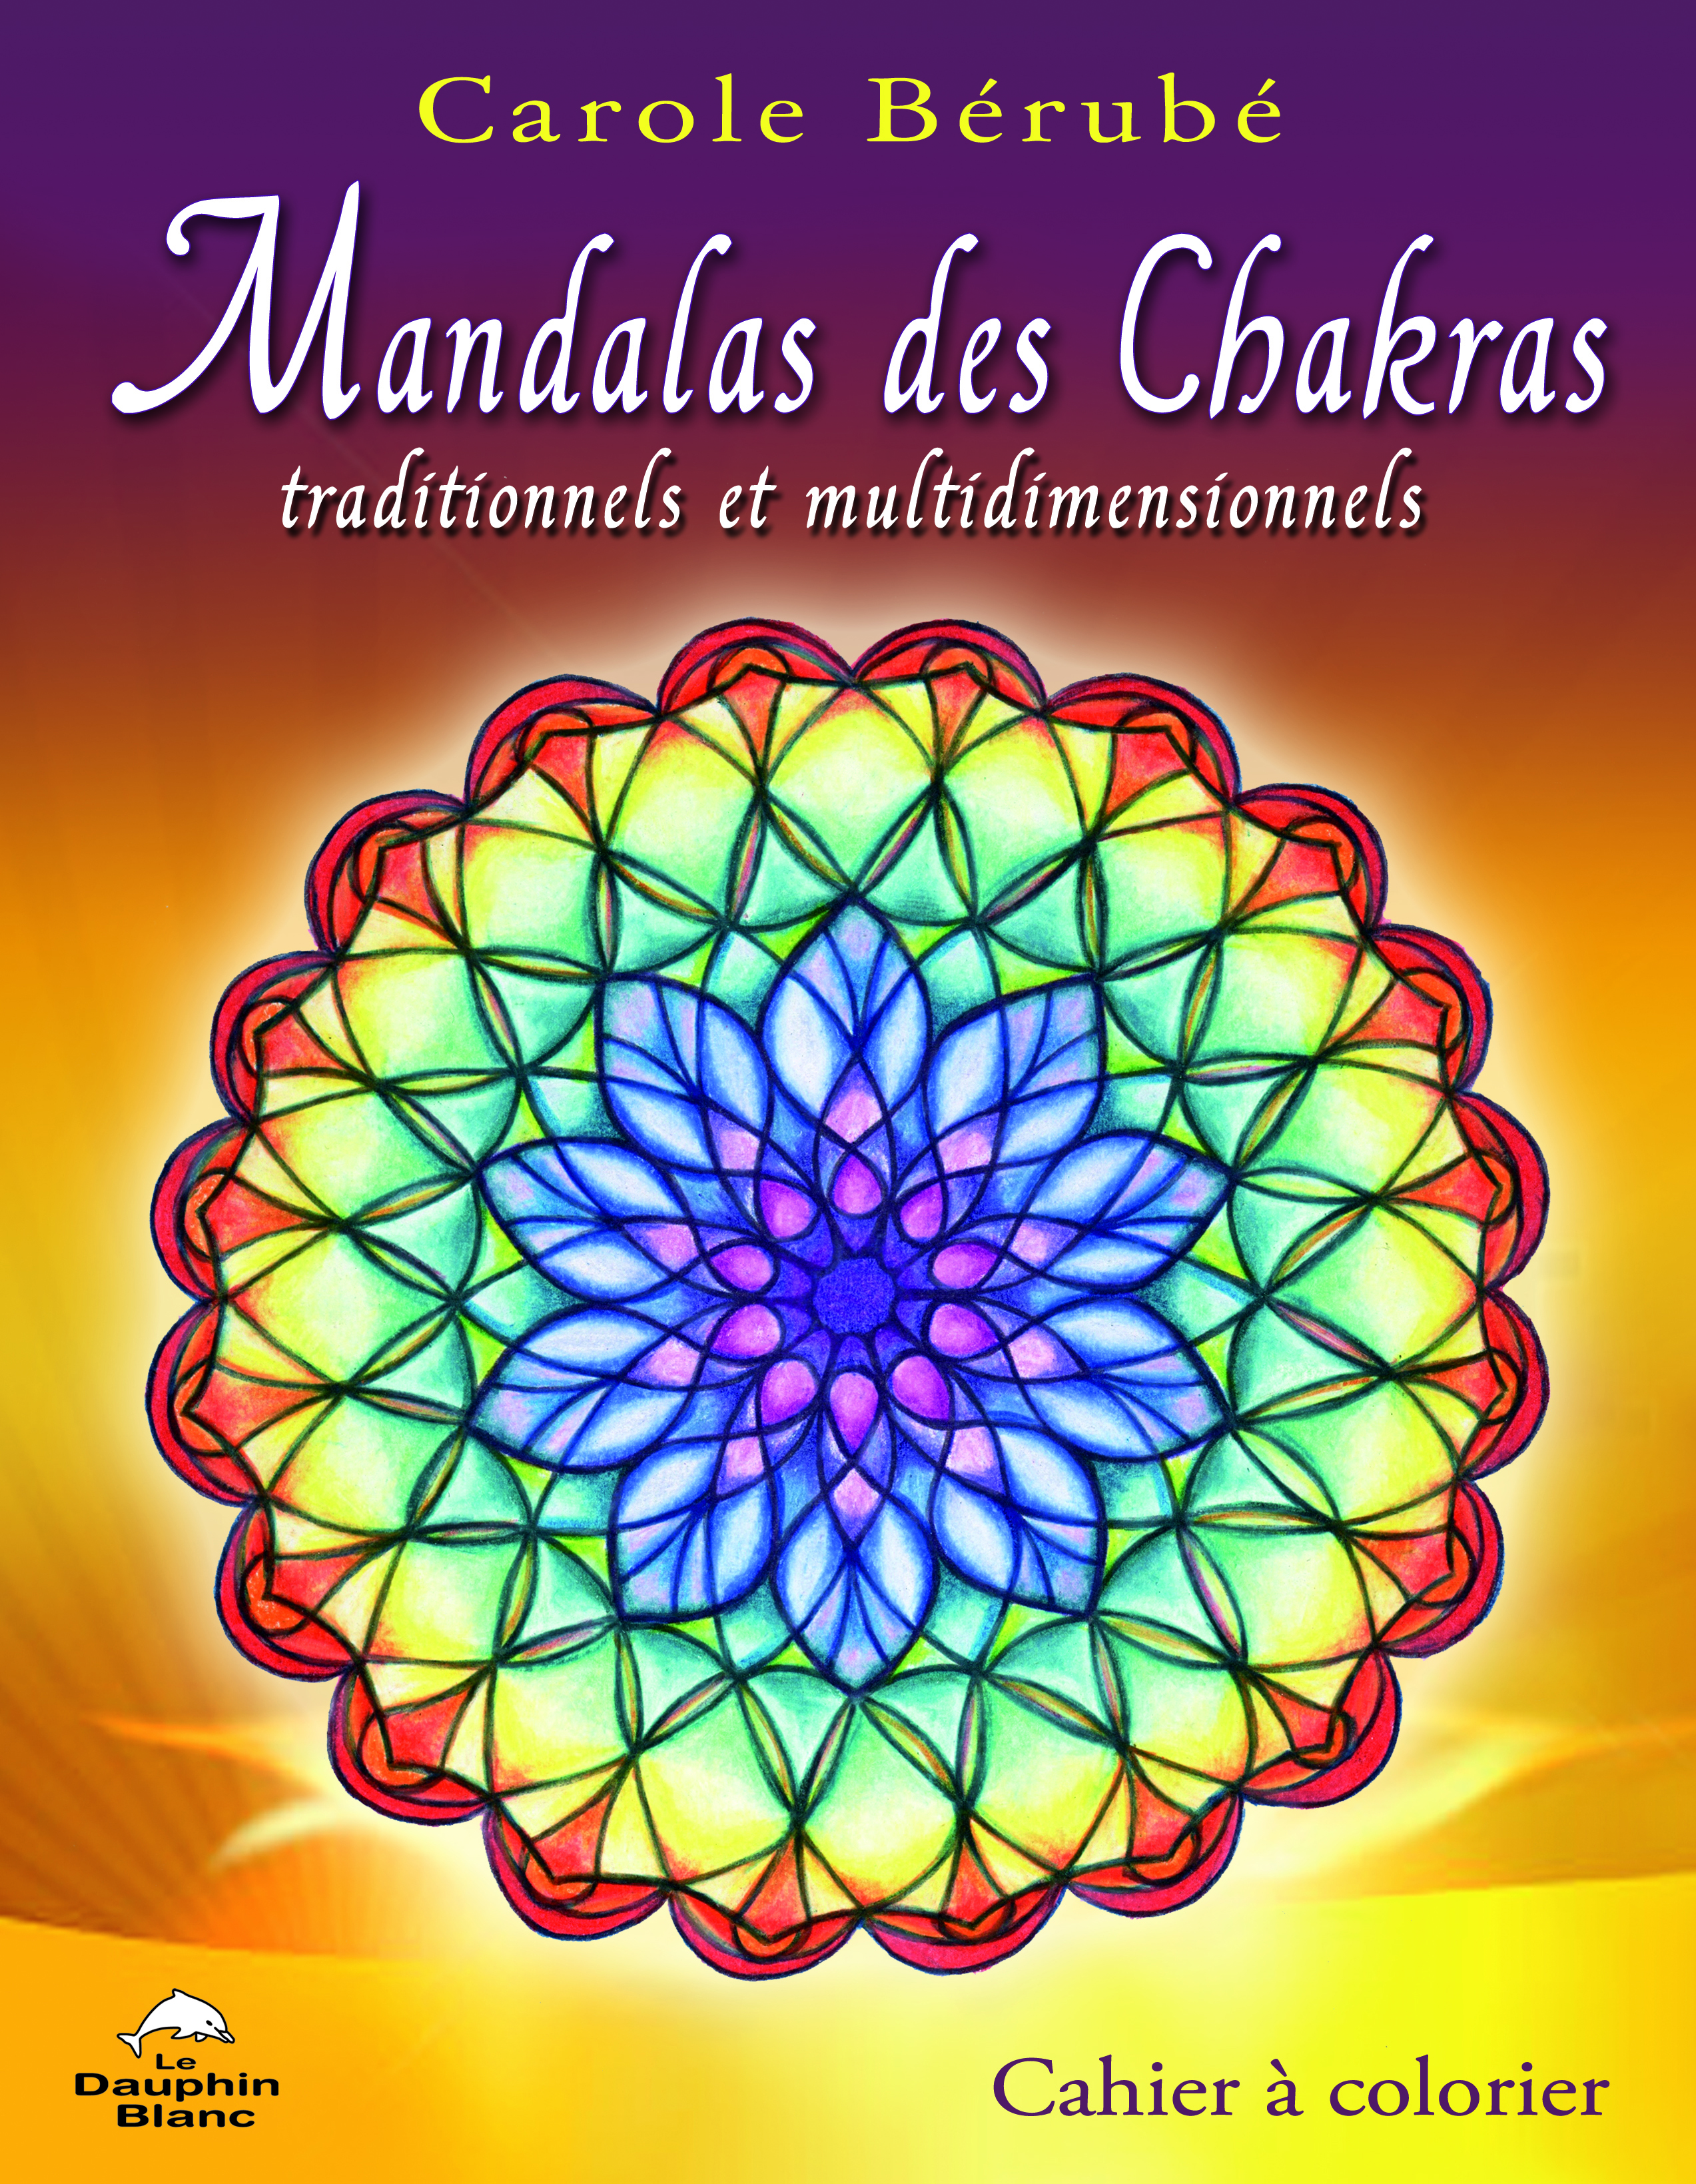 Mandalas des chakras 2